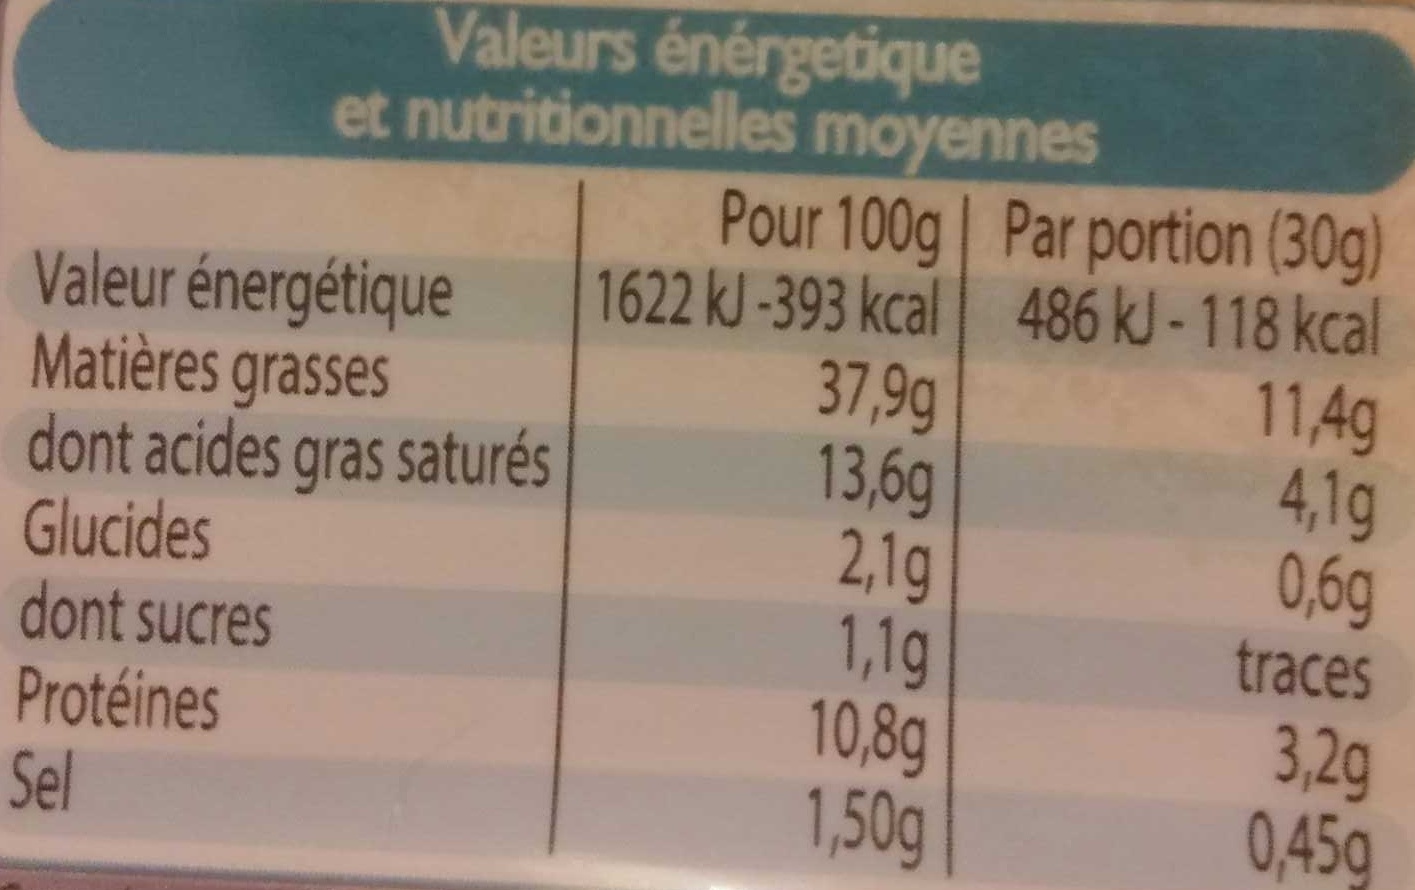 Mousse de canard au Porto - Tableau nutritionnel